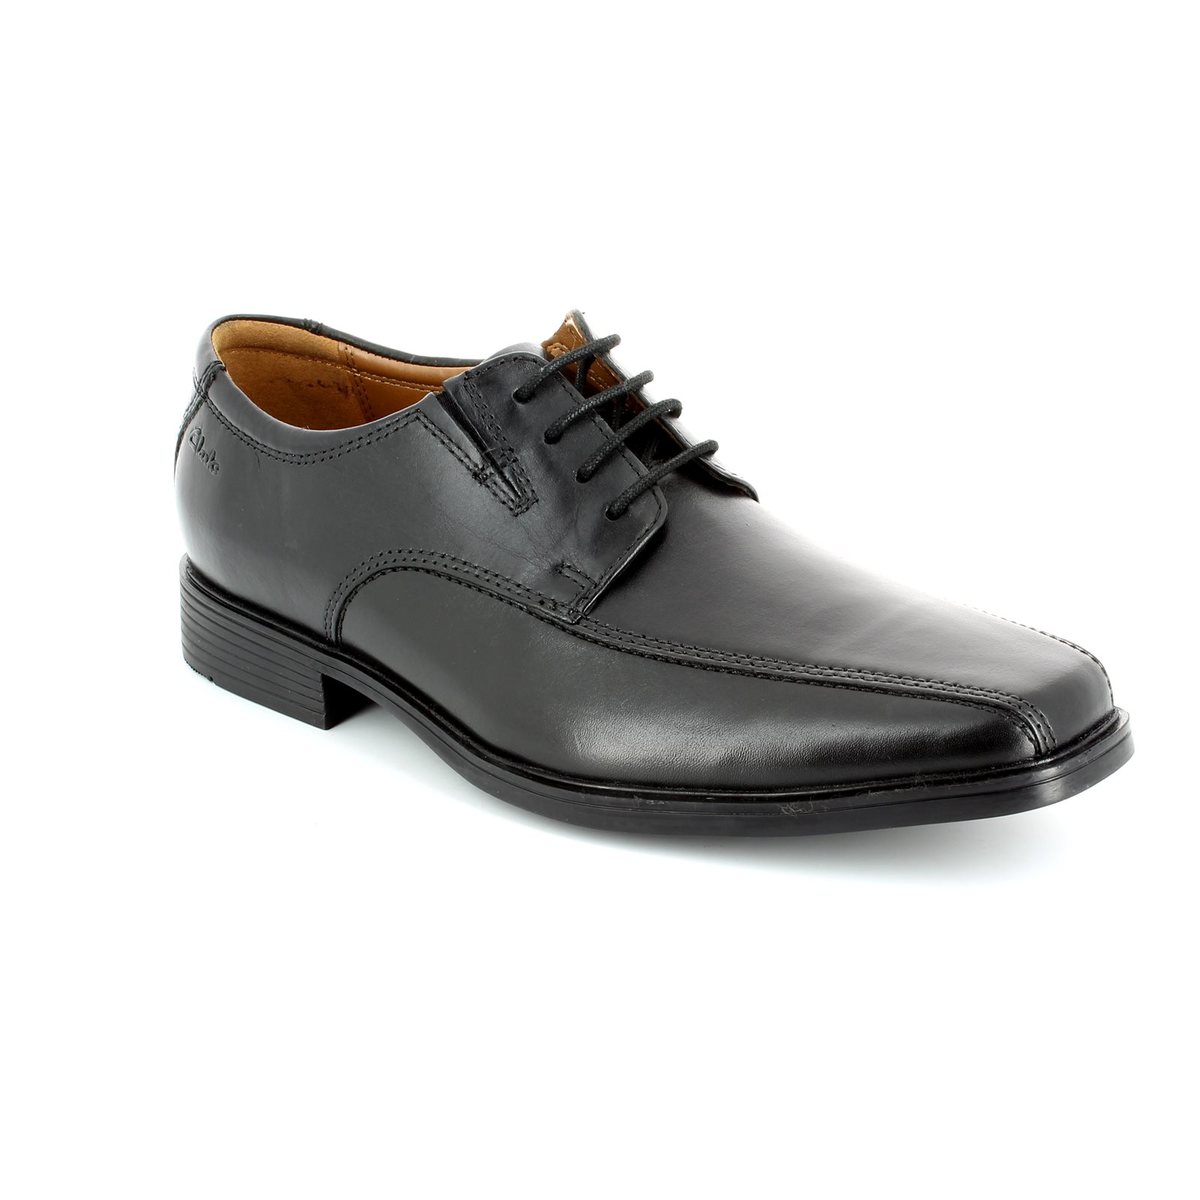 Clarks Tilden Walk G Fit Black formal shoes